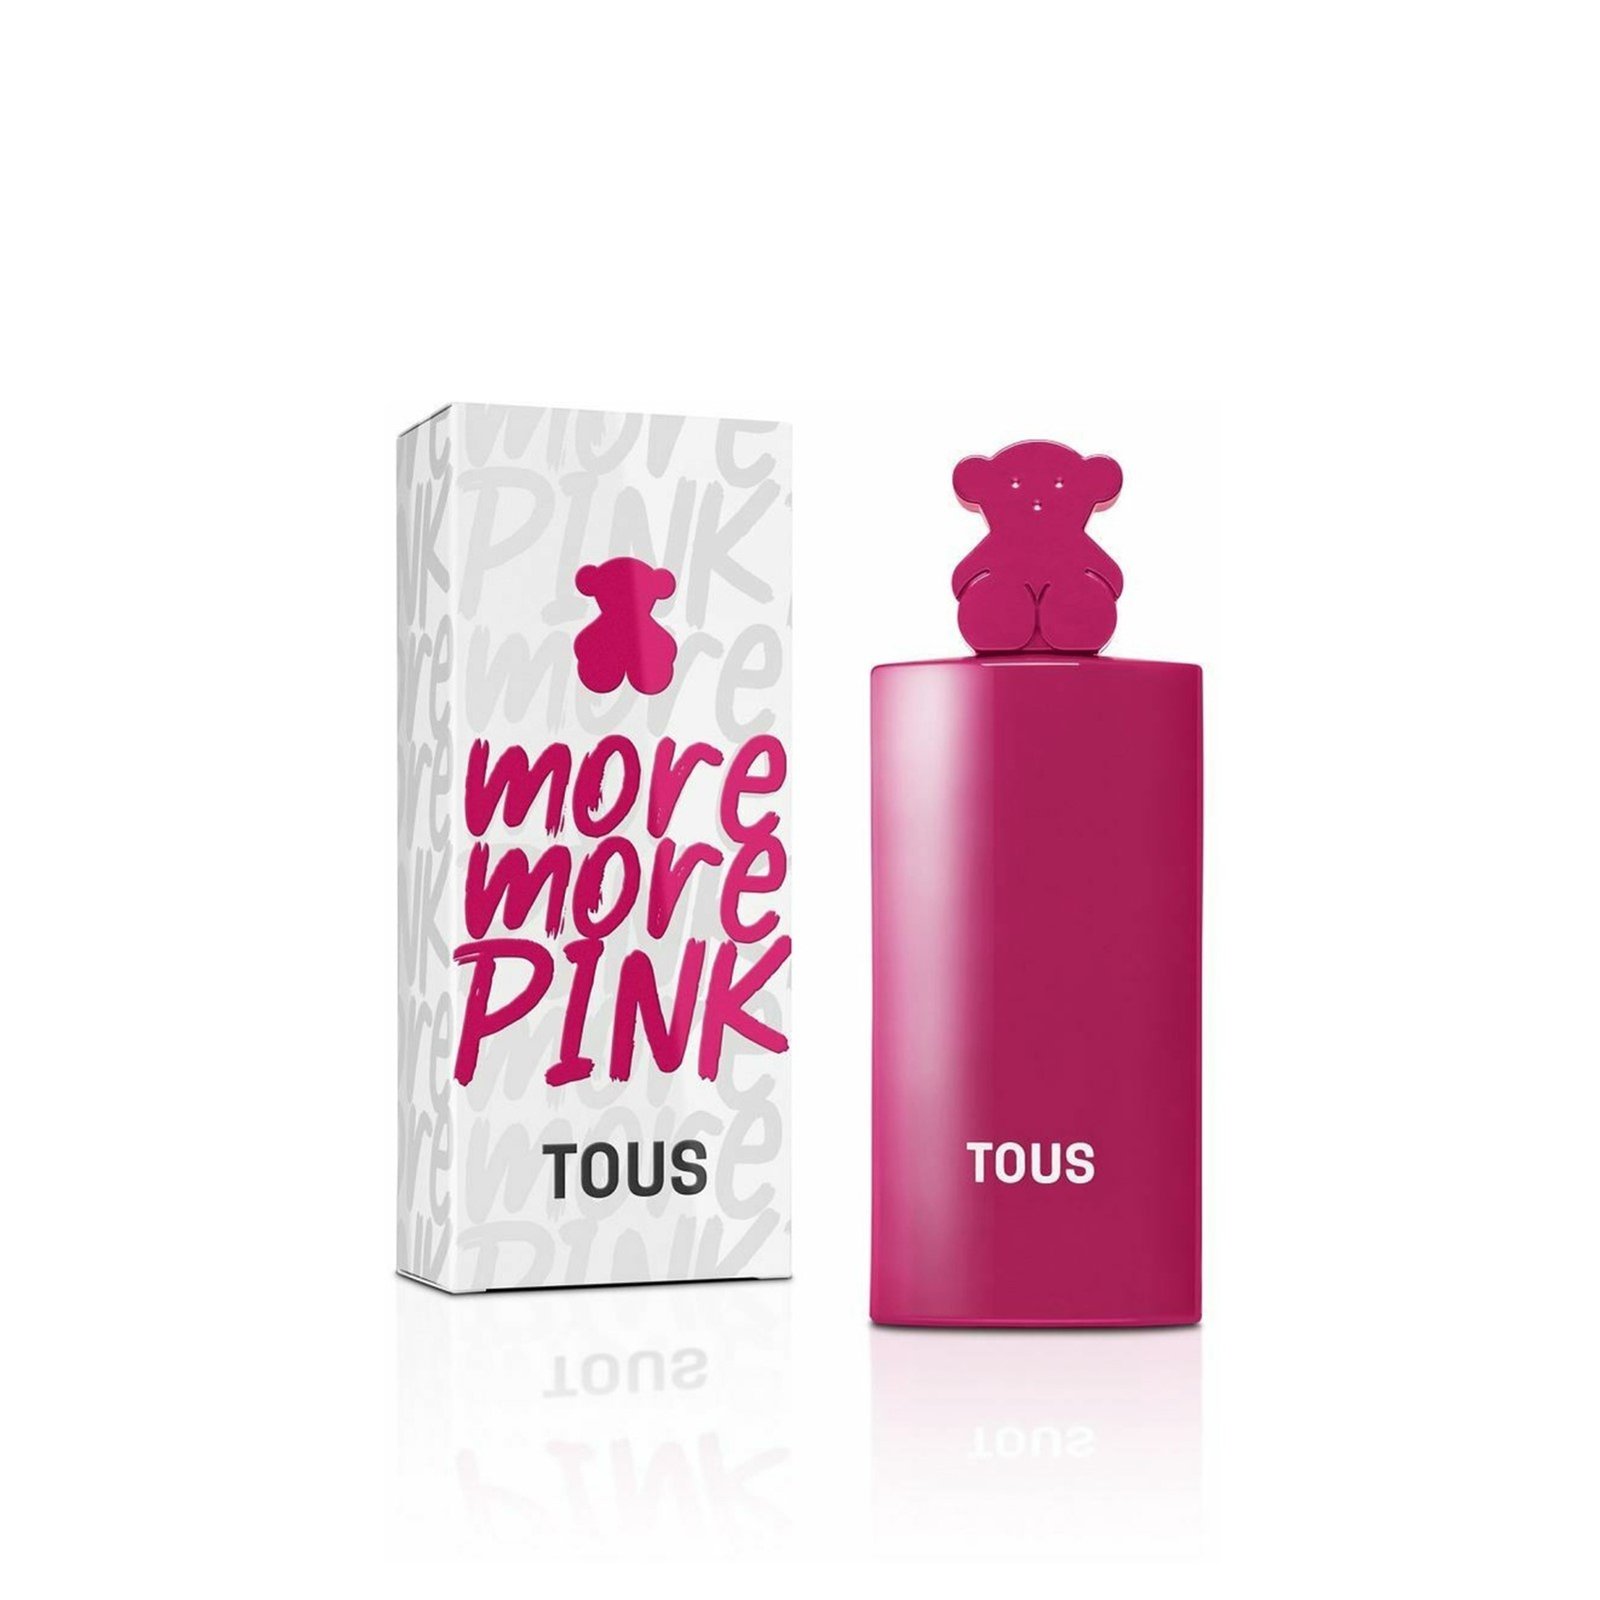 Tous More More Pink Eau de Toilette 50ml (1.7 fl oz)